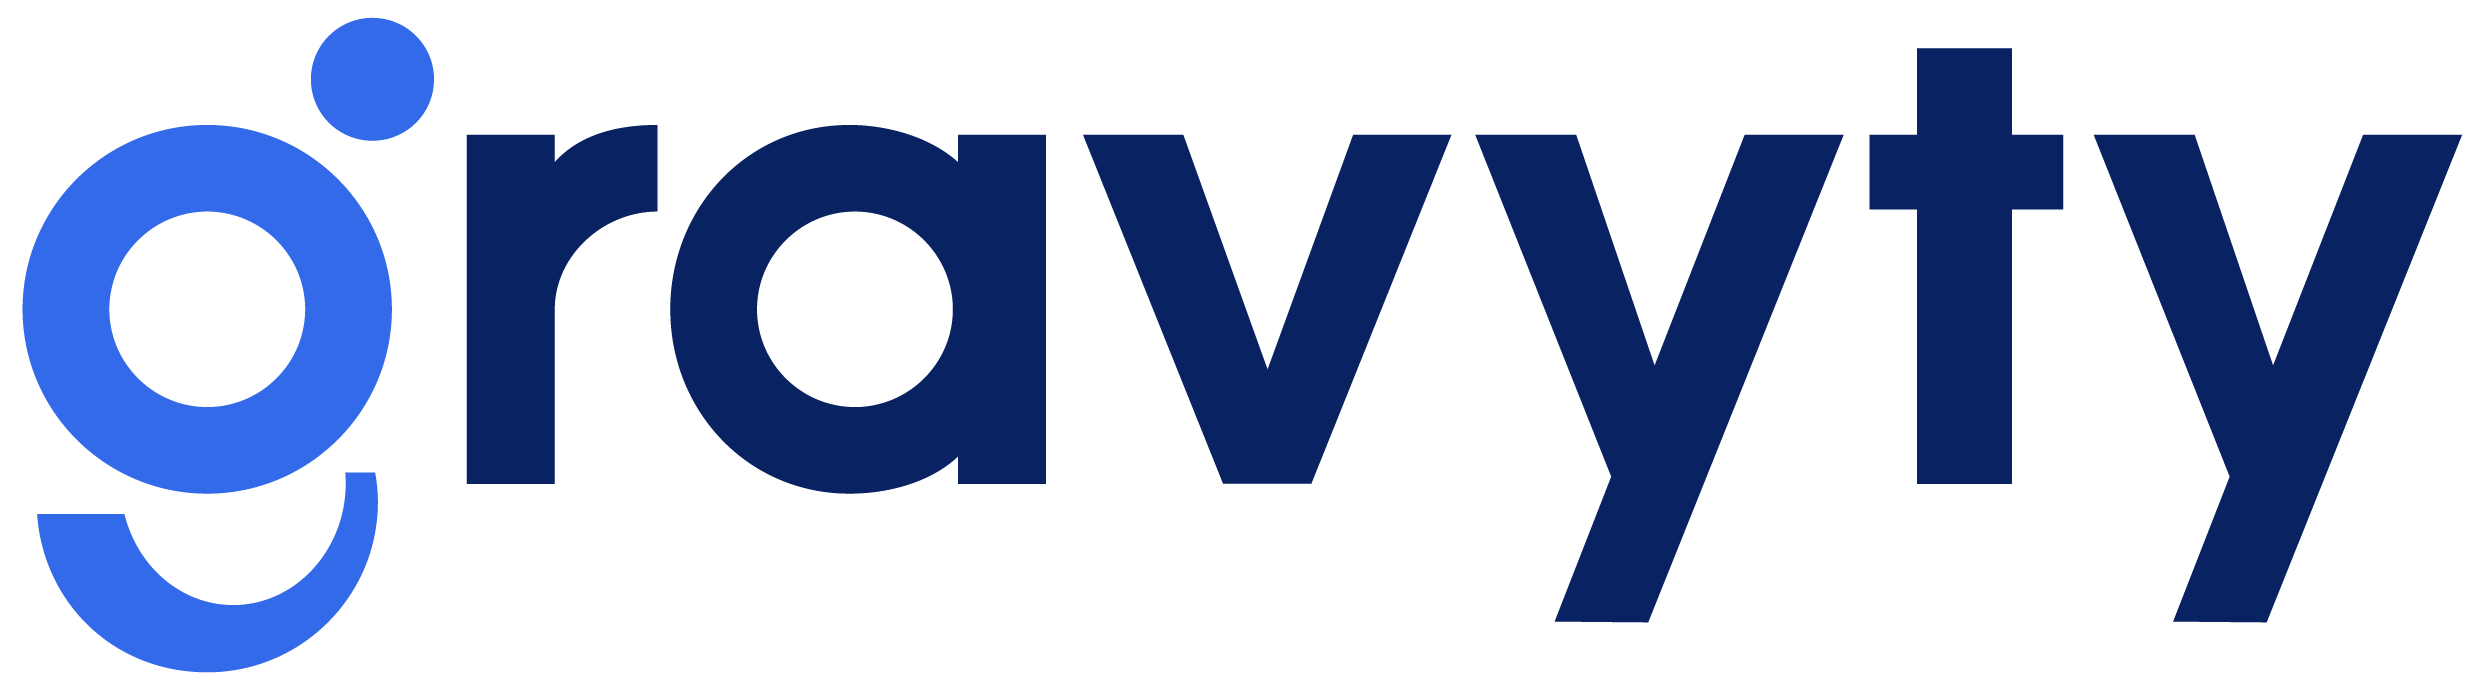 Gravyty logo